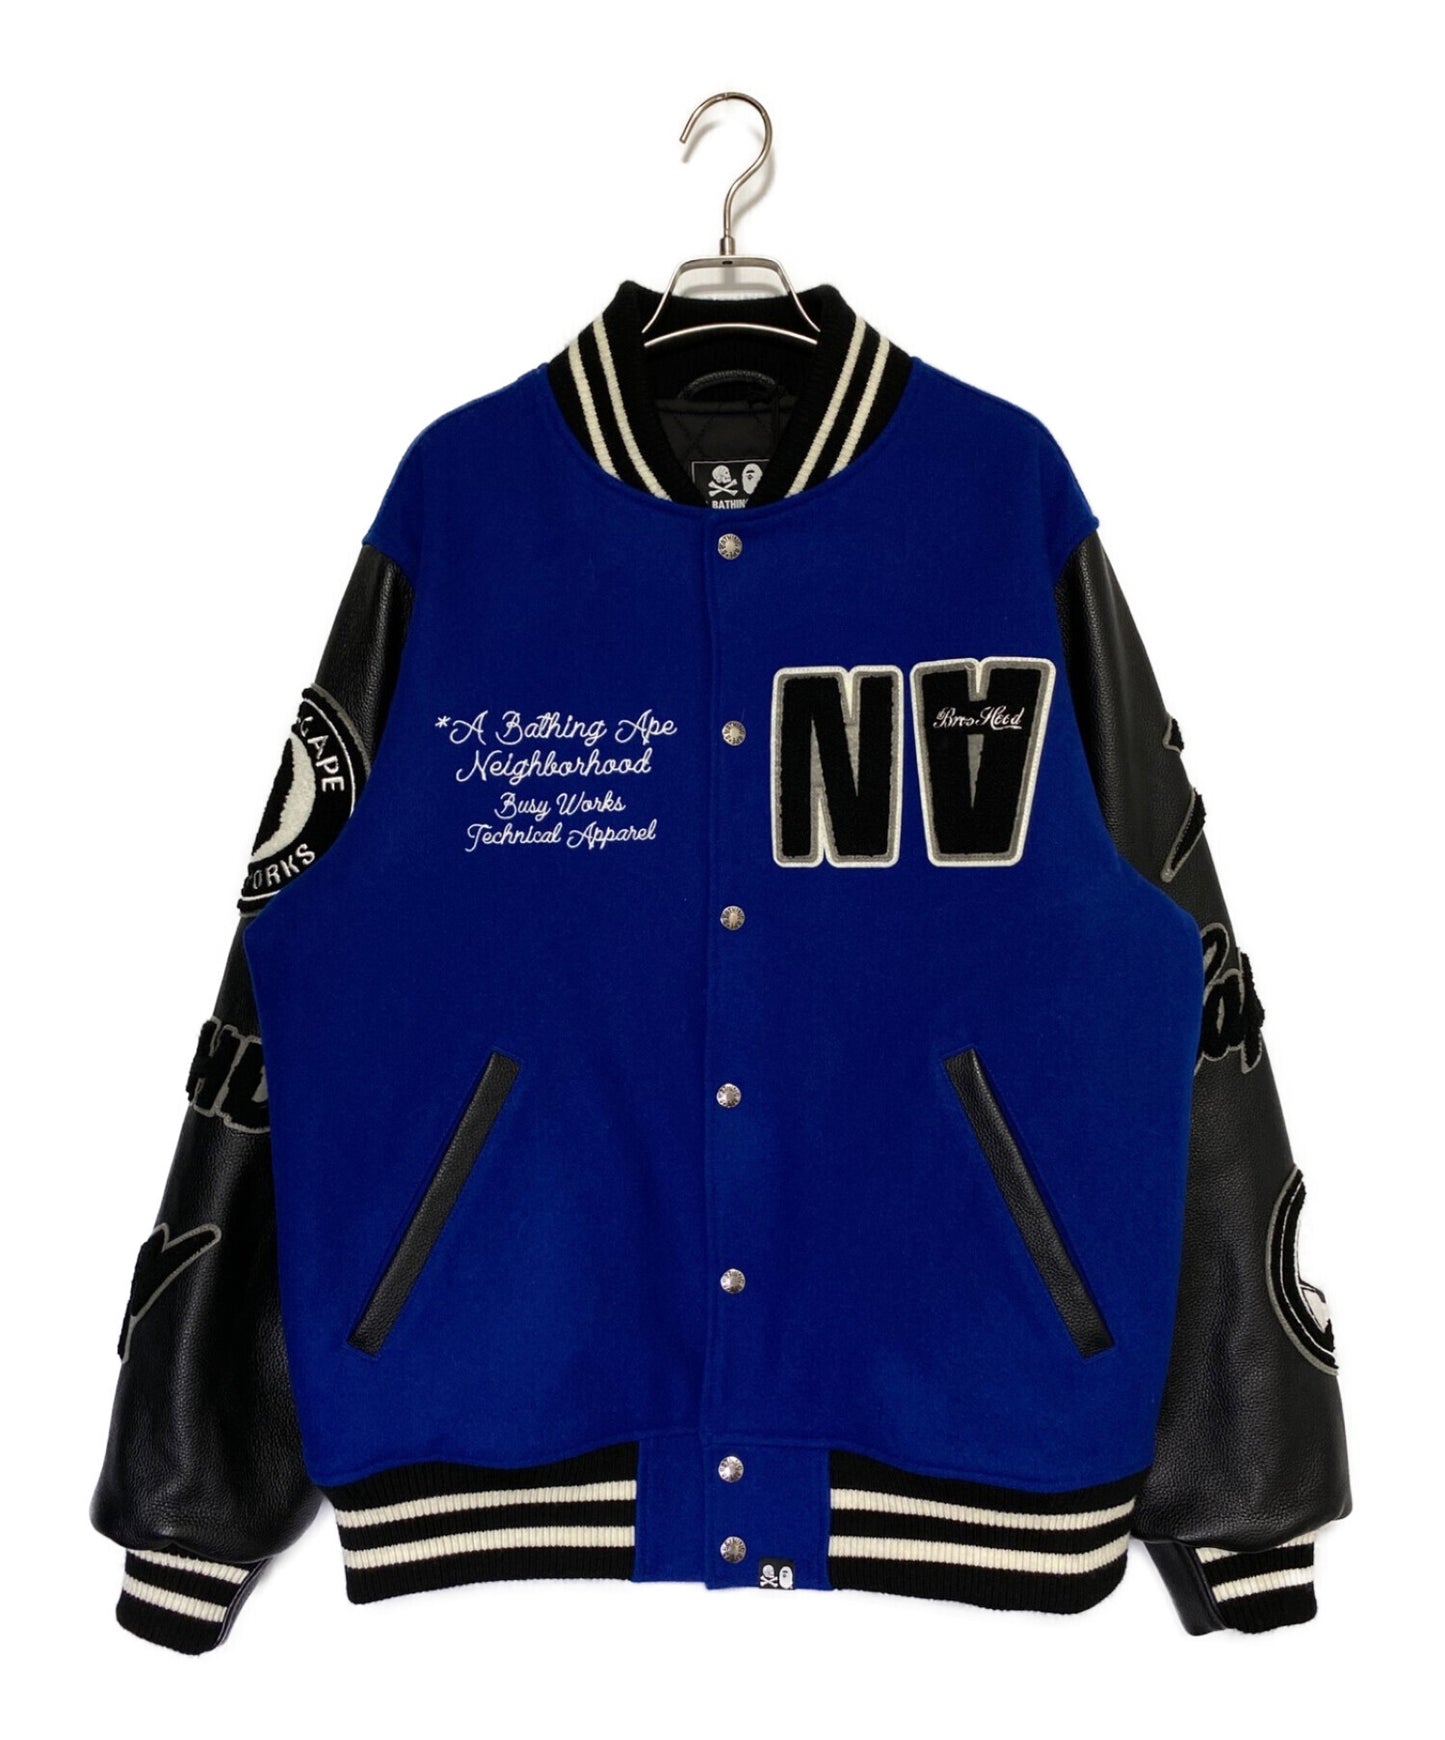 Louis Vuitton Nylon Sleeve Varsity Jacket